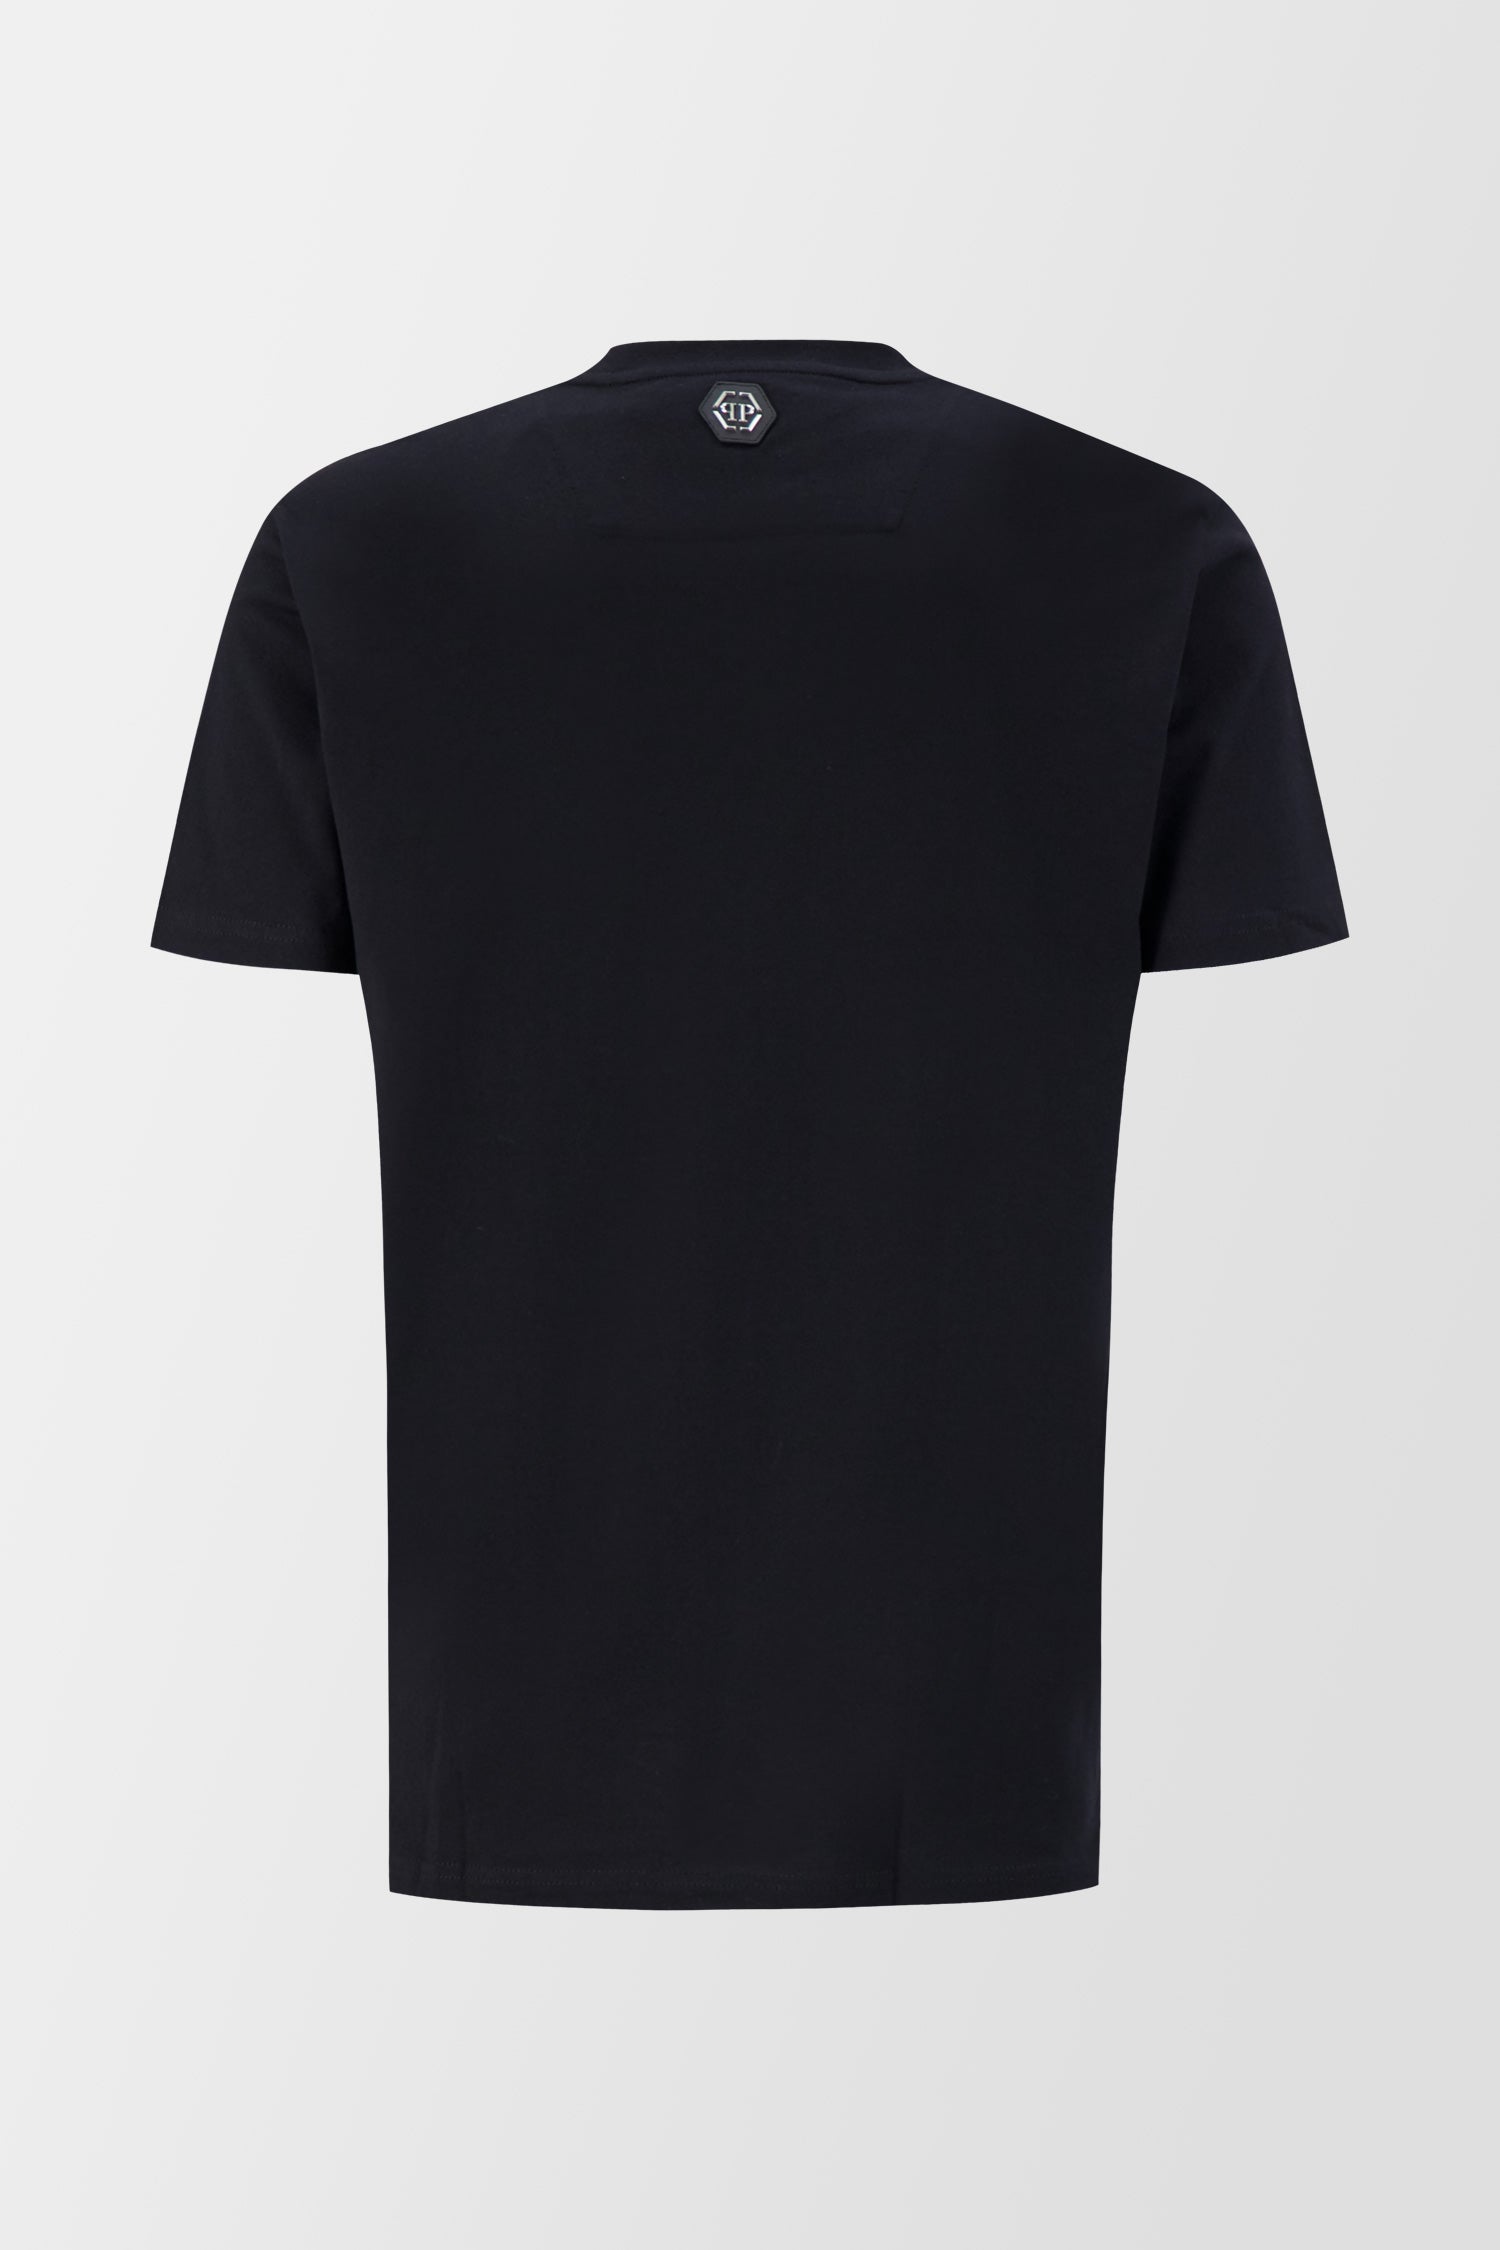 Philipp Plein Black Monster T-Shirt